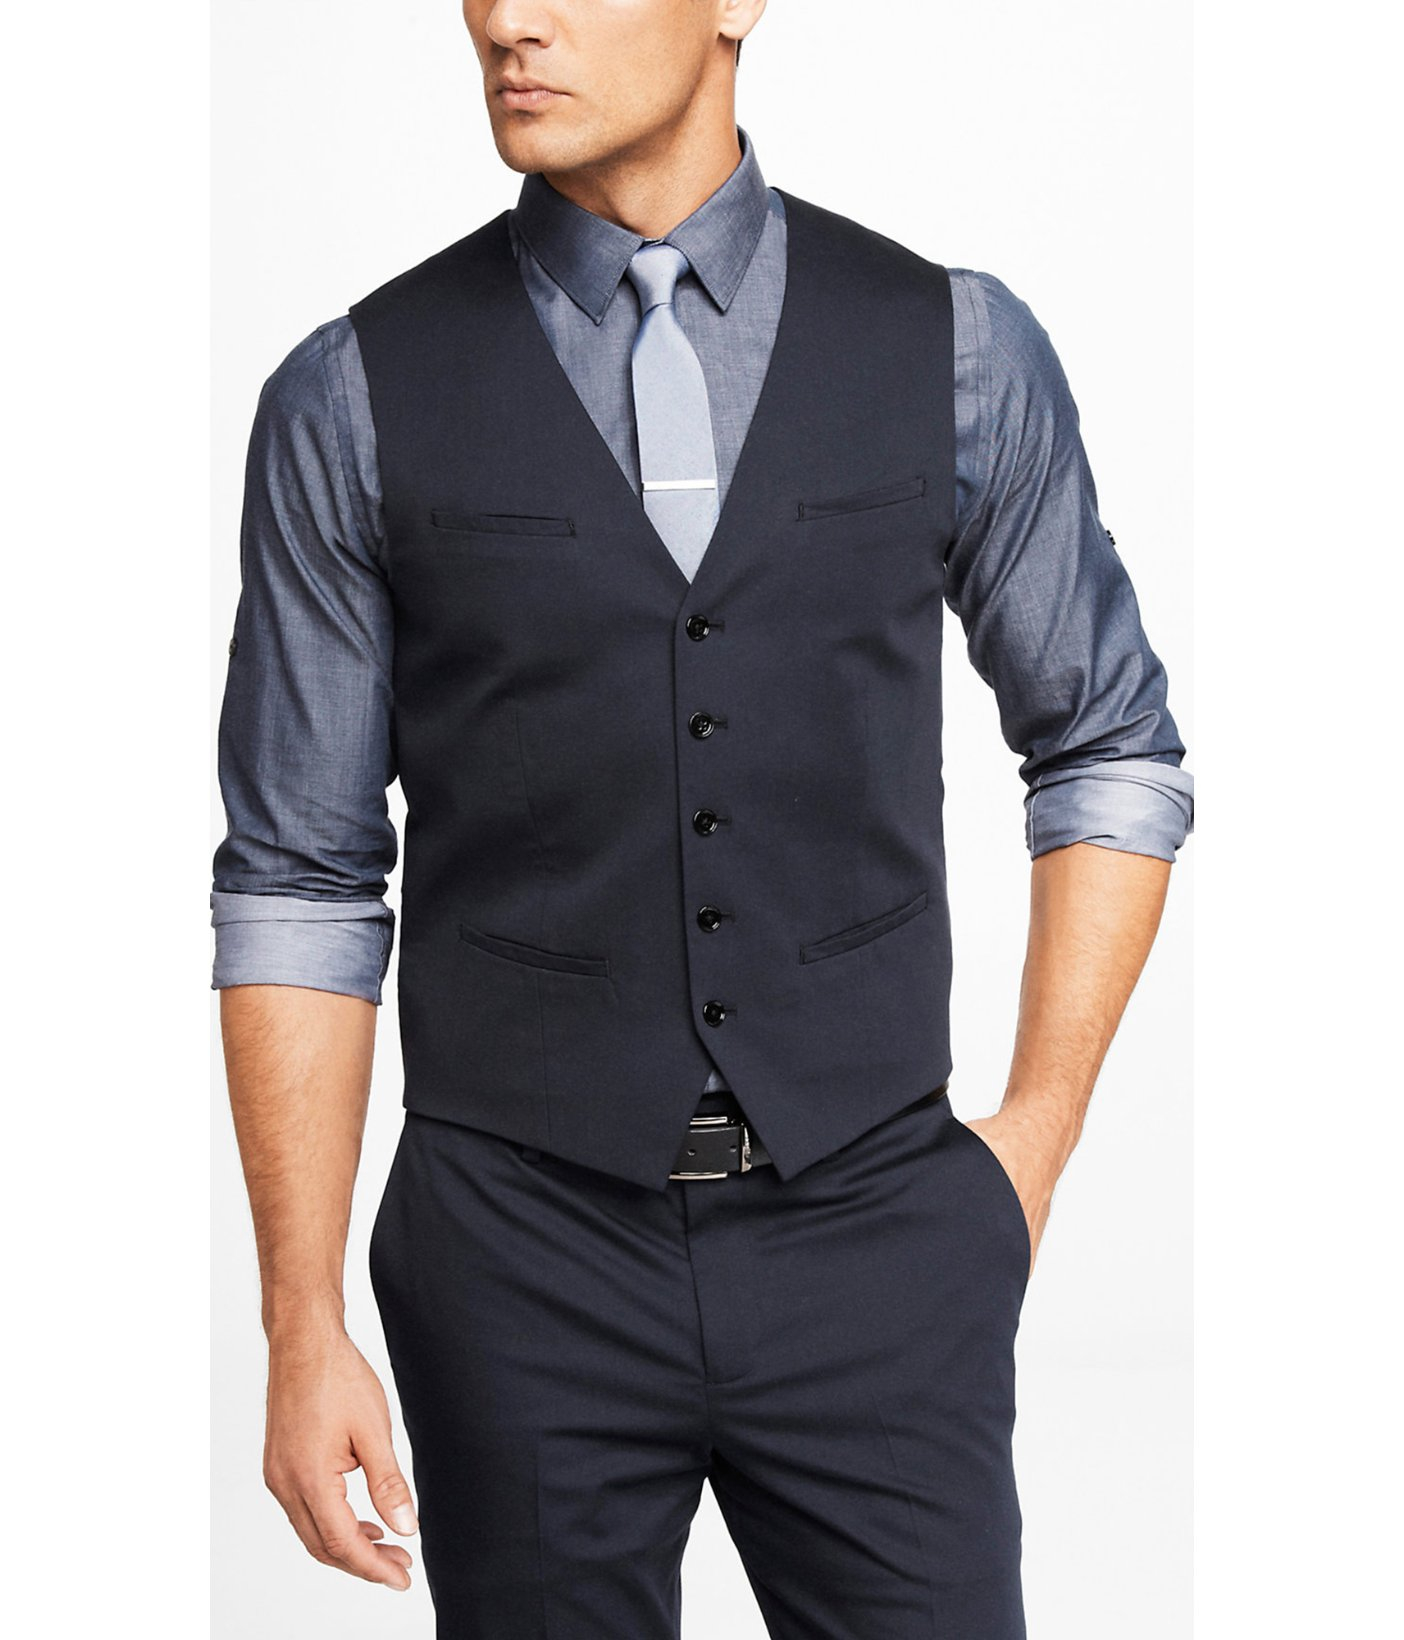 Mens Suit Vest Navy Blue : The Best Low Fade Haircuts for Men | Men's ...